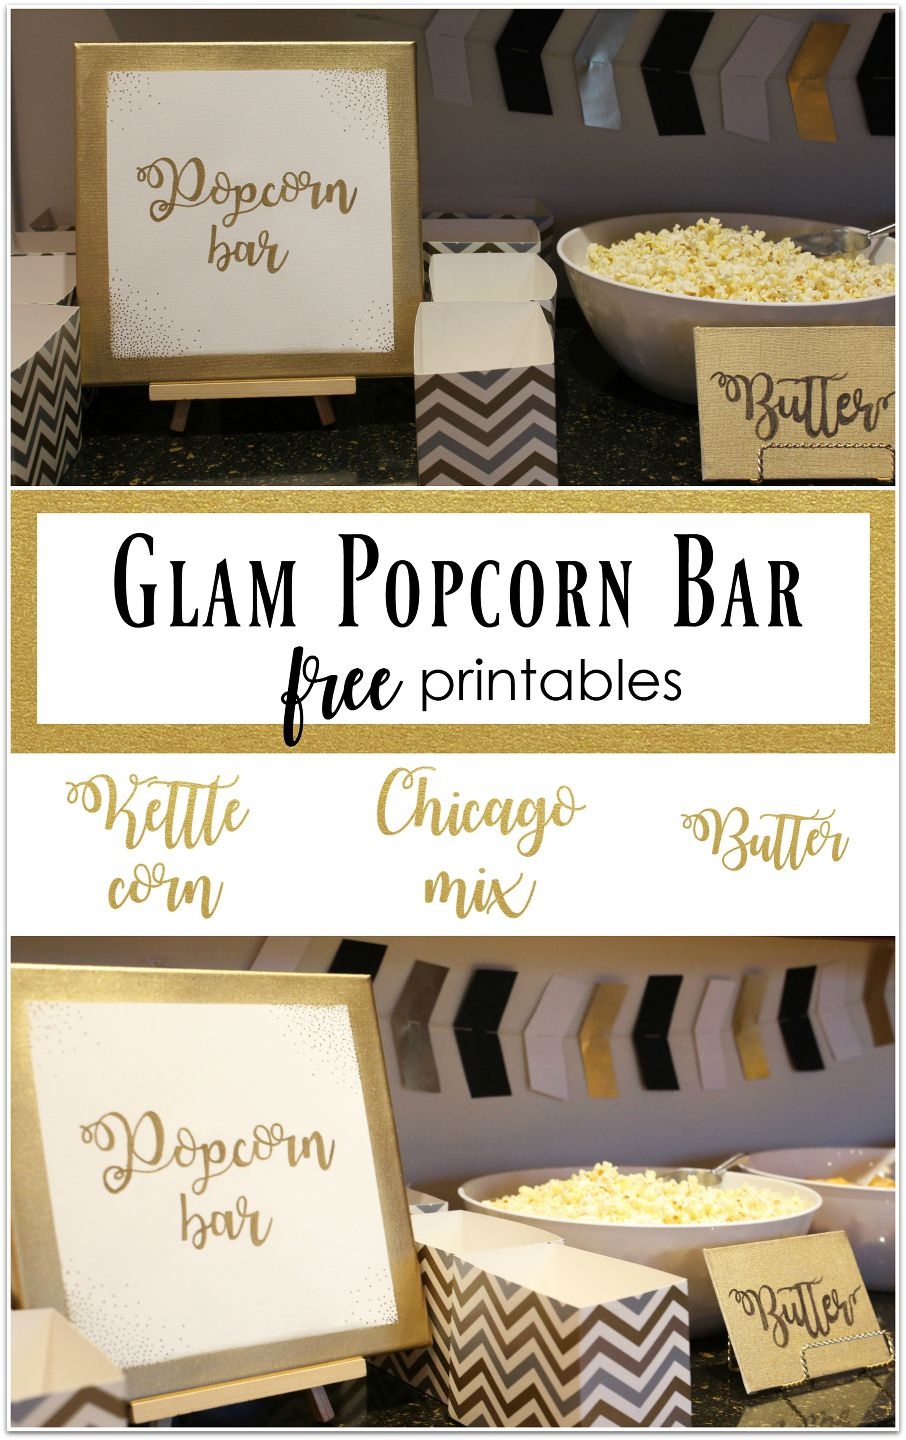 Glam Popcorn Bar, Popcorn Bar, Popcorn Bar Signs, Free Printables - Popcorn Bar Sign Printable Free